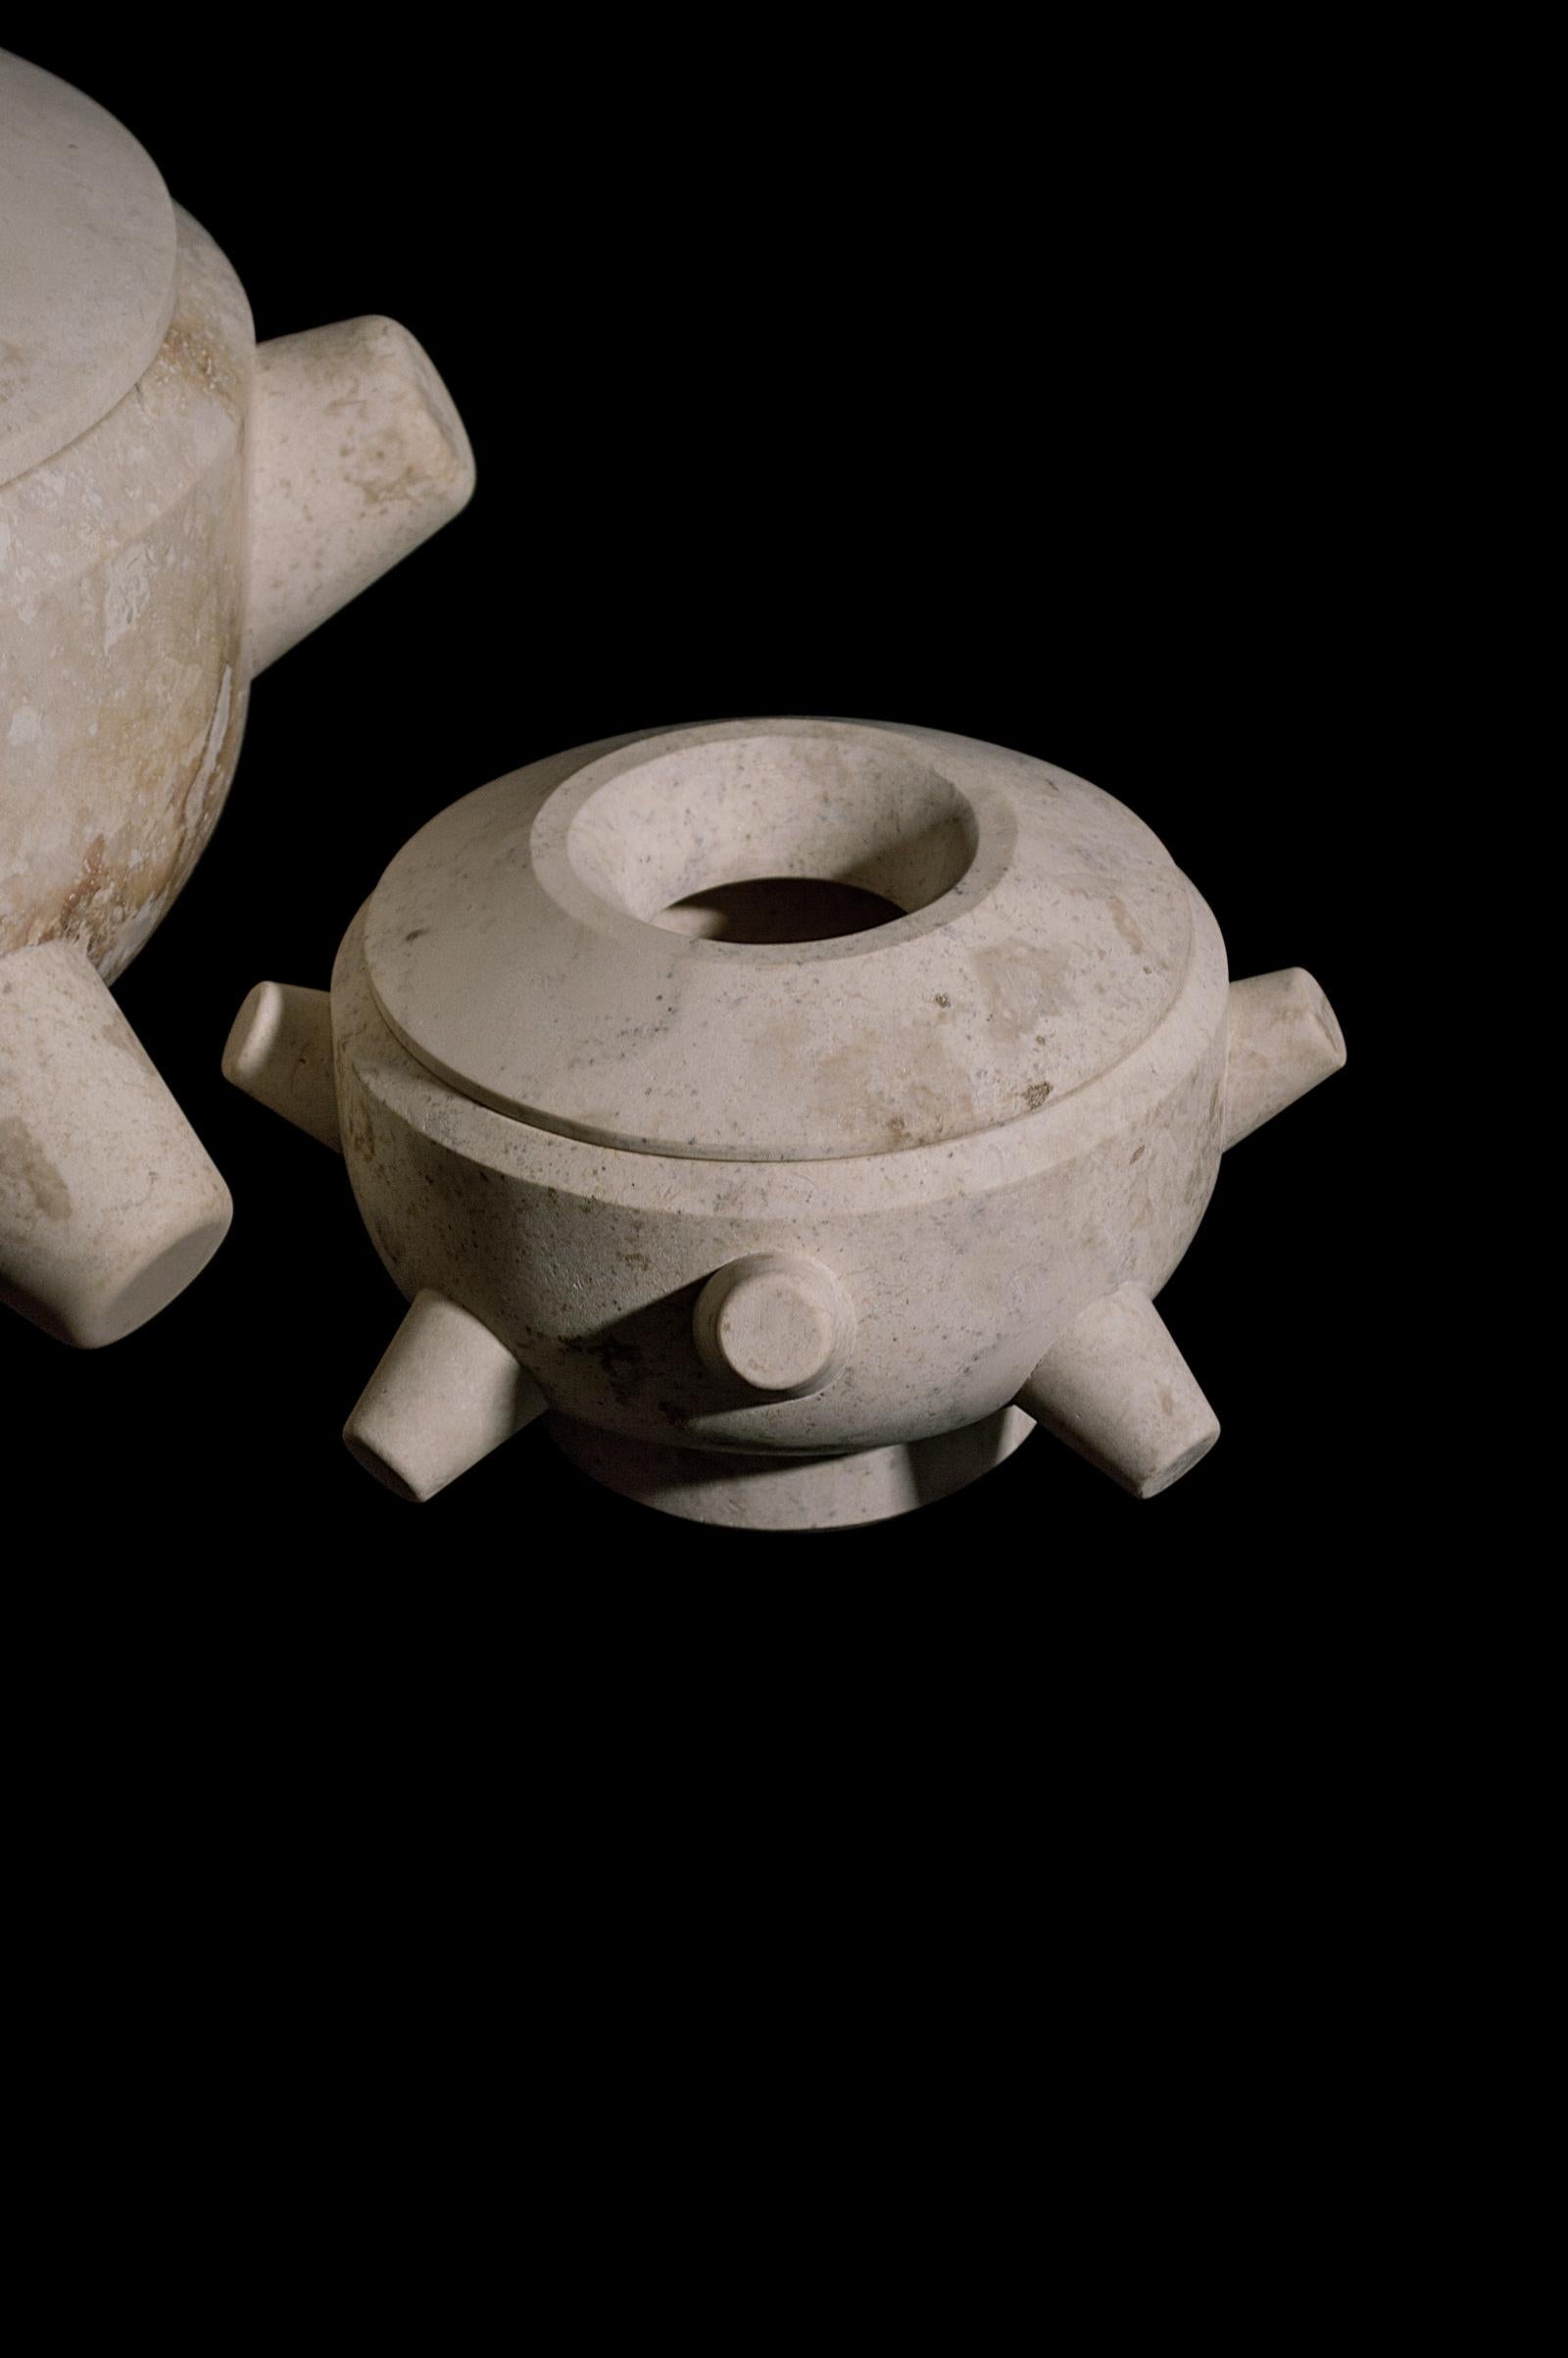 Die Copaleras (Räuchergefäße) aus der Ceremonia-Spezialserie von ACOOCOORO spielen mit ihrem weichen Aussehen, ihrer zeremoniellen Funktion und dem natürlichen Material: Der Crema Maya Stein der Halbinsel Yucatán. Sie suggerieren die Anwesenheit von